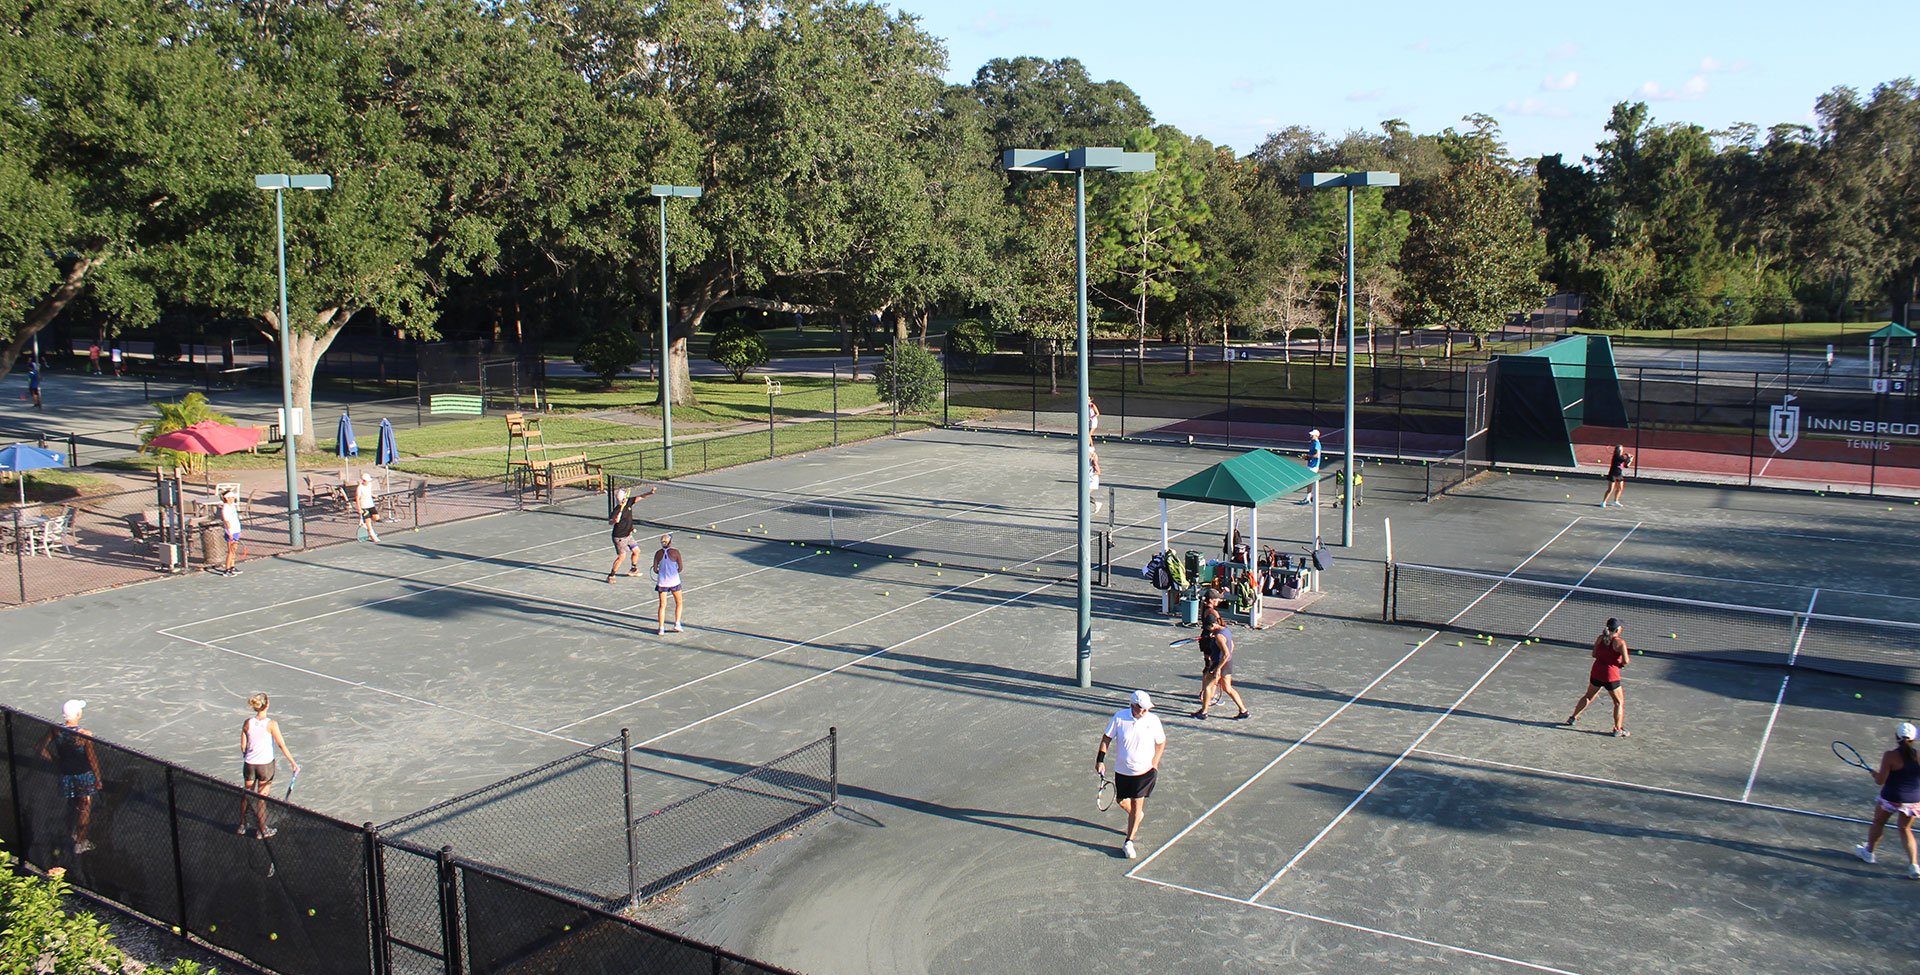 An aerial shot of a tennis court